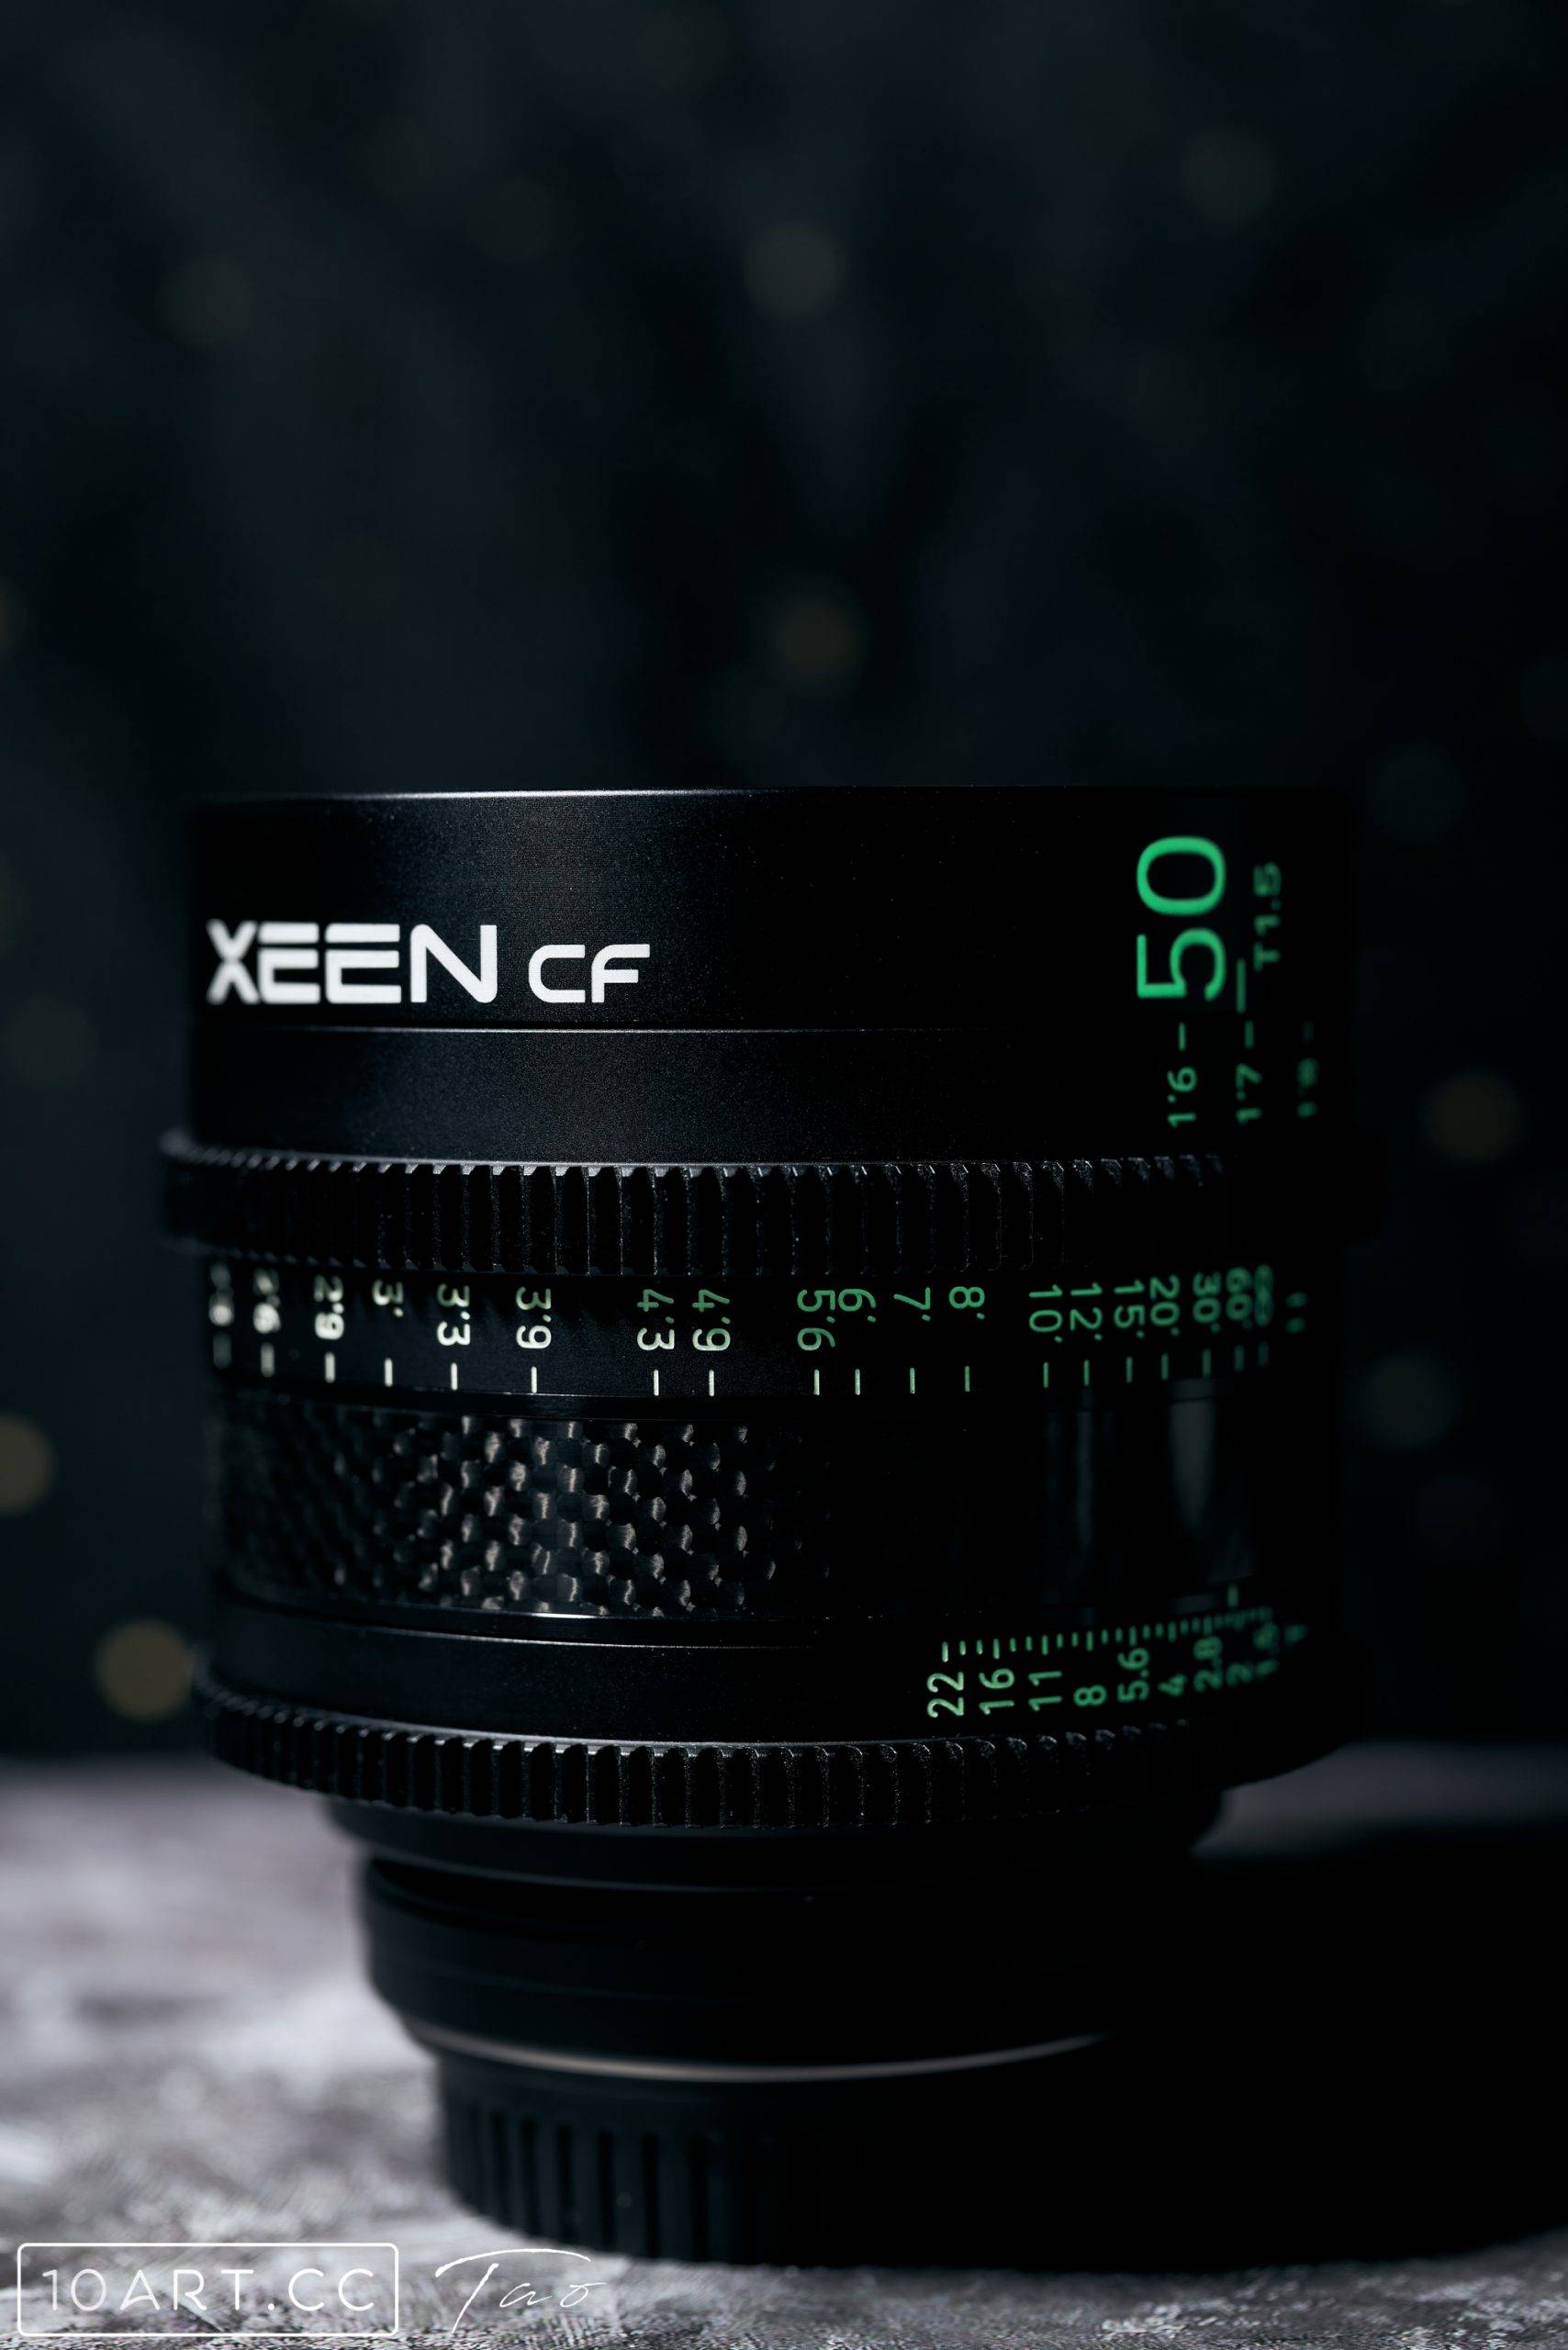 XEEN CF 电影镜头 50T1.5 体验分享-10ARTCC